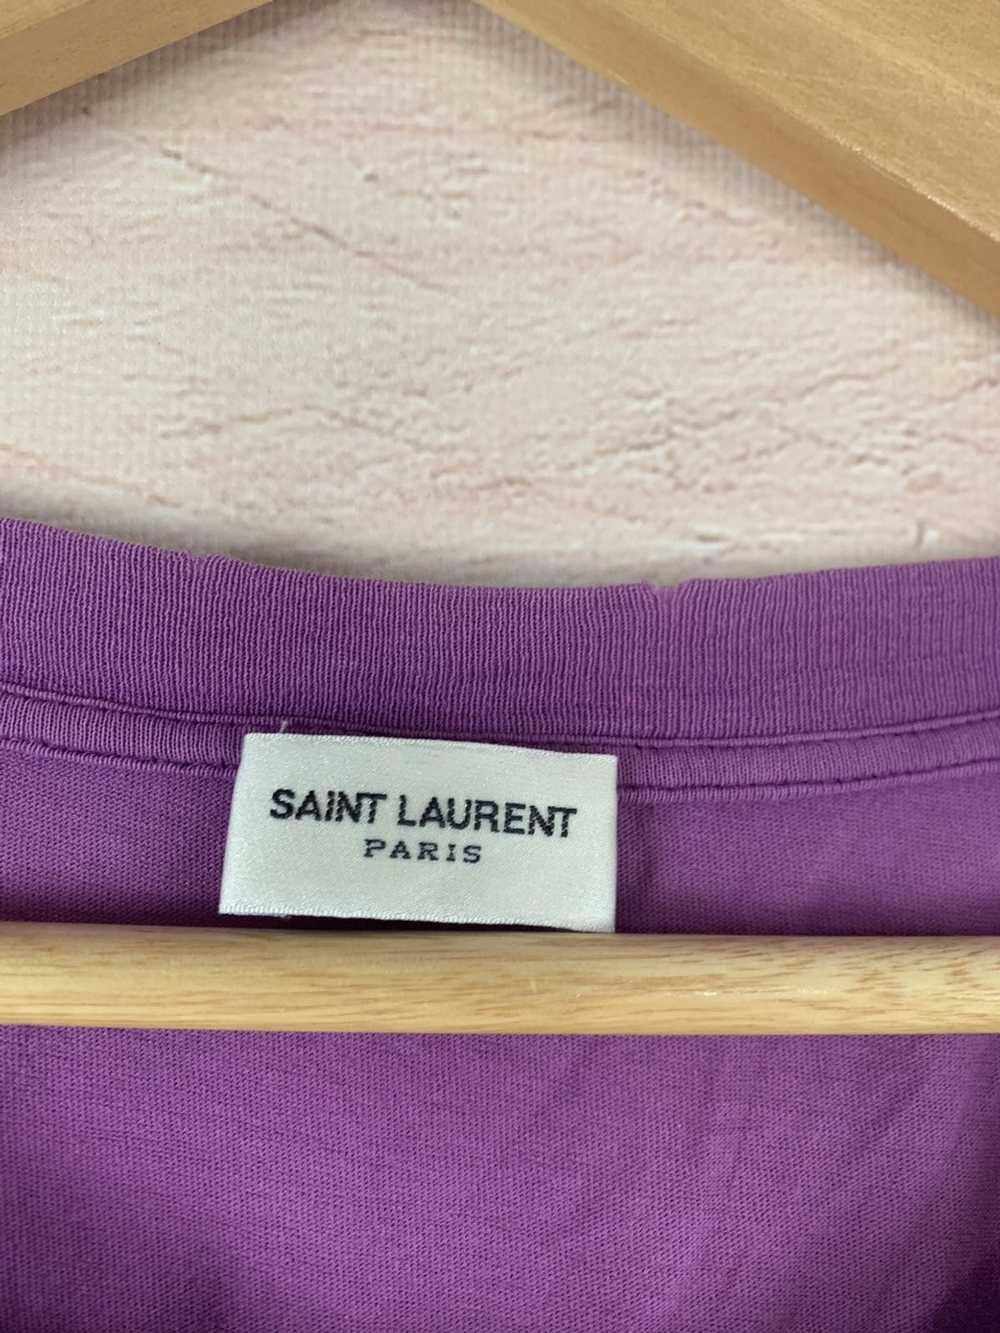 Saint Laurent Paris Saint Laurent T-Shirt - image 7